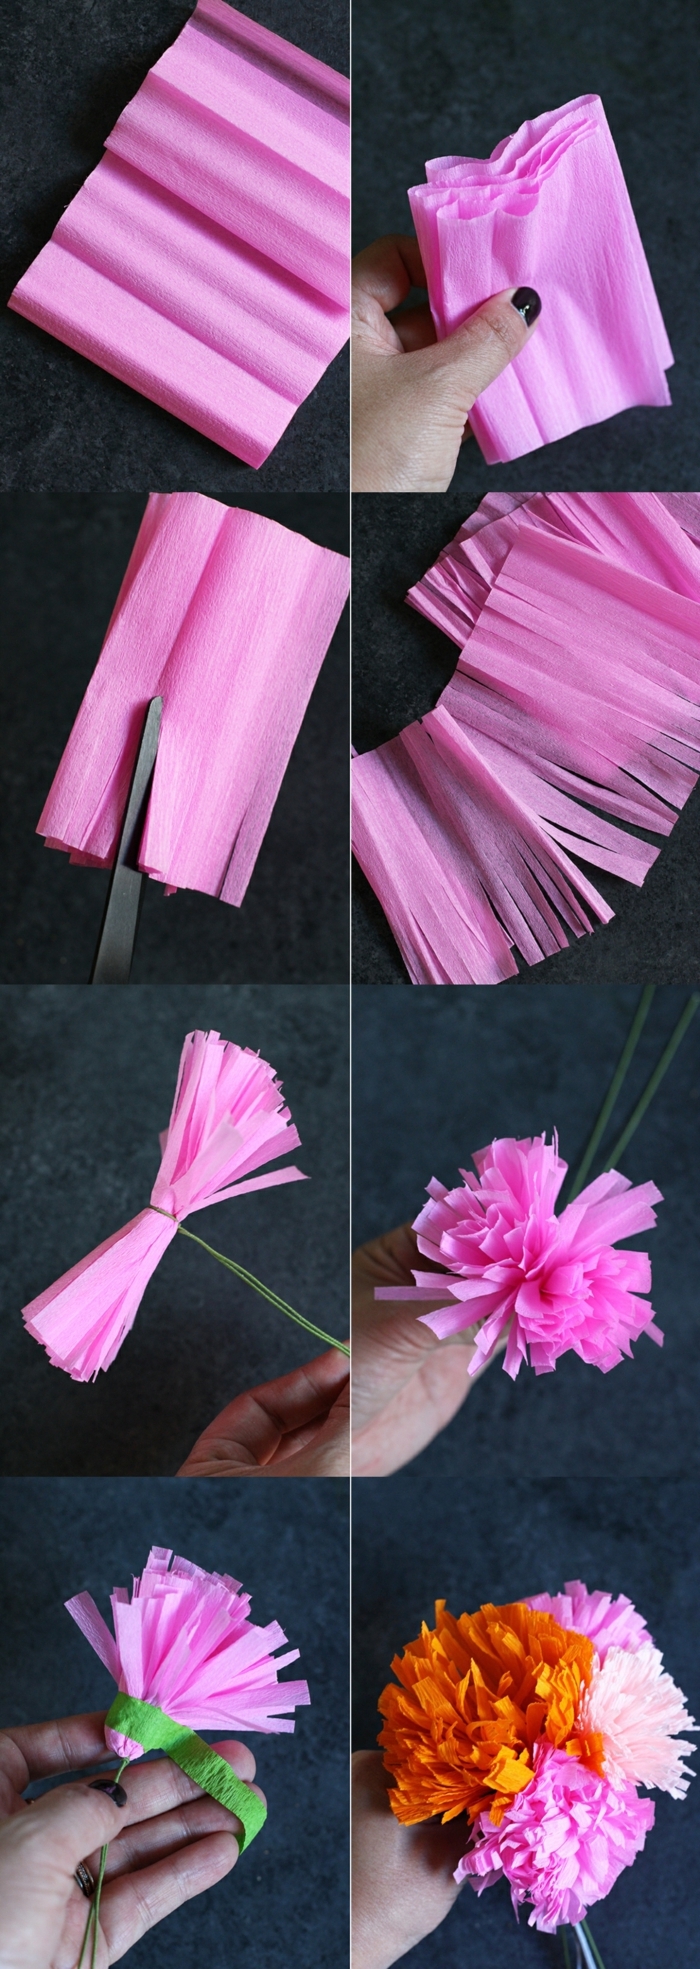 rosa Blume aus papier für Buchsbaumkranz basteln, DIY Anleitung, Wanddeko Ideen selber machen